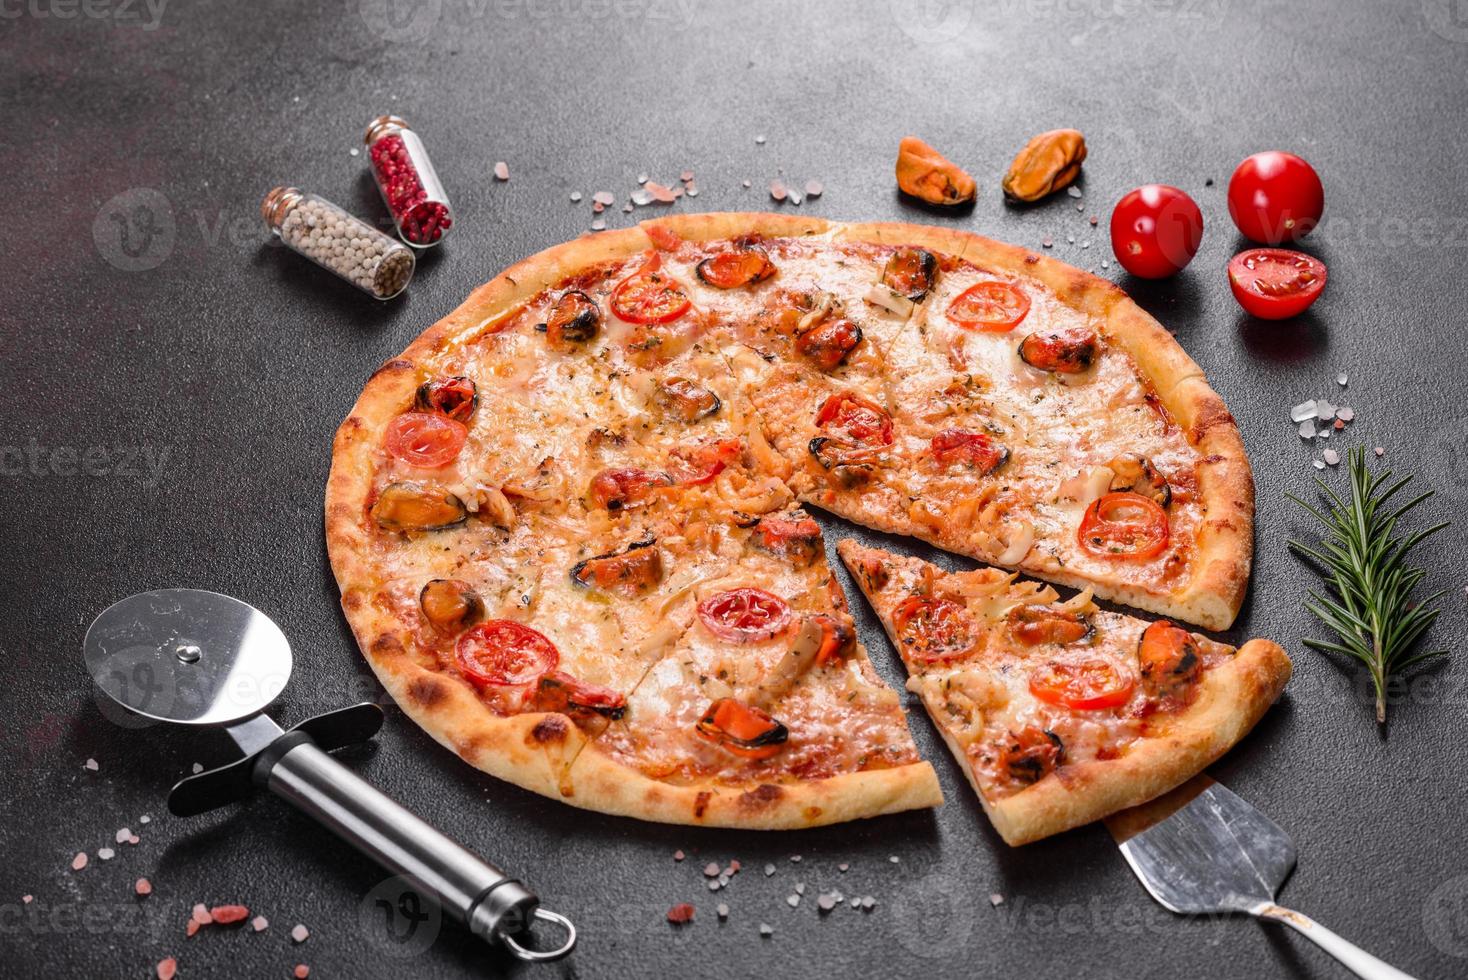 välsmakande skivad pizza med skaldjur och tomat på en betongbakgrund foto